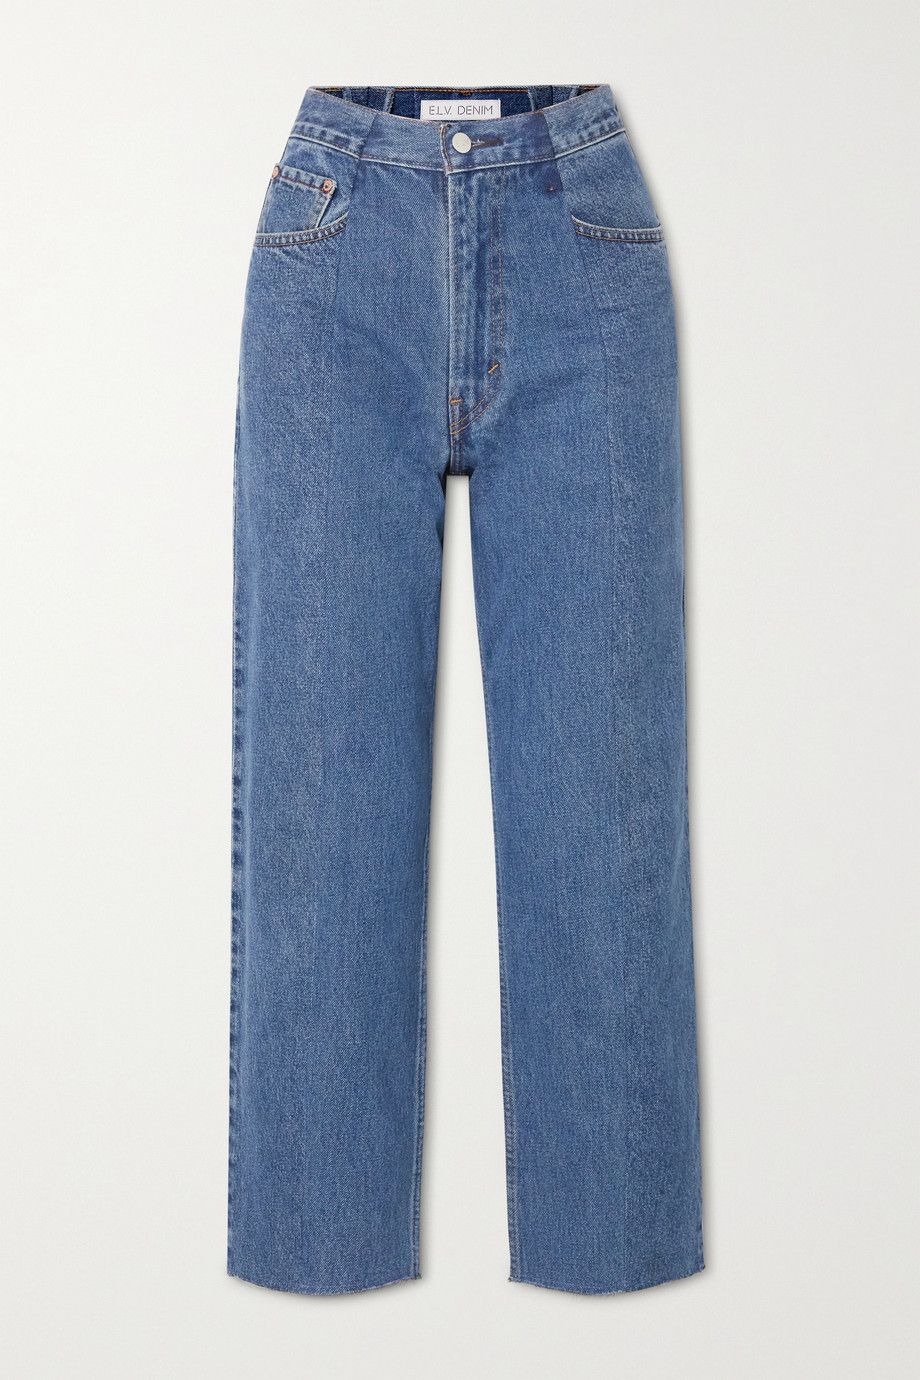 tibi jeans